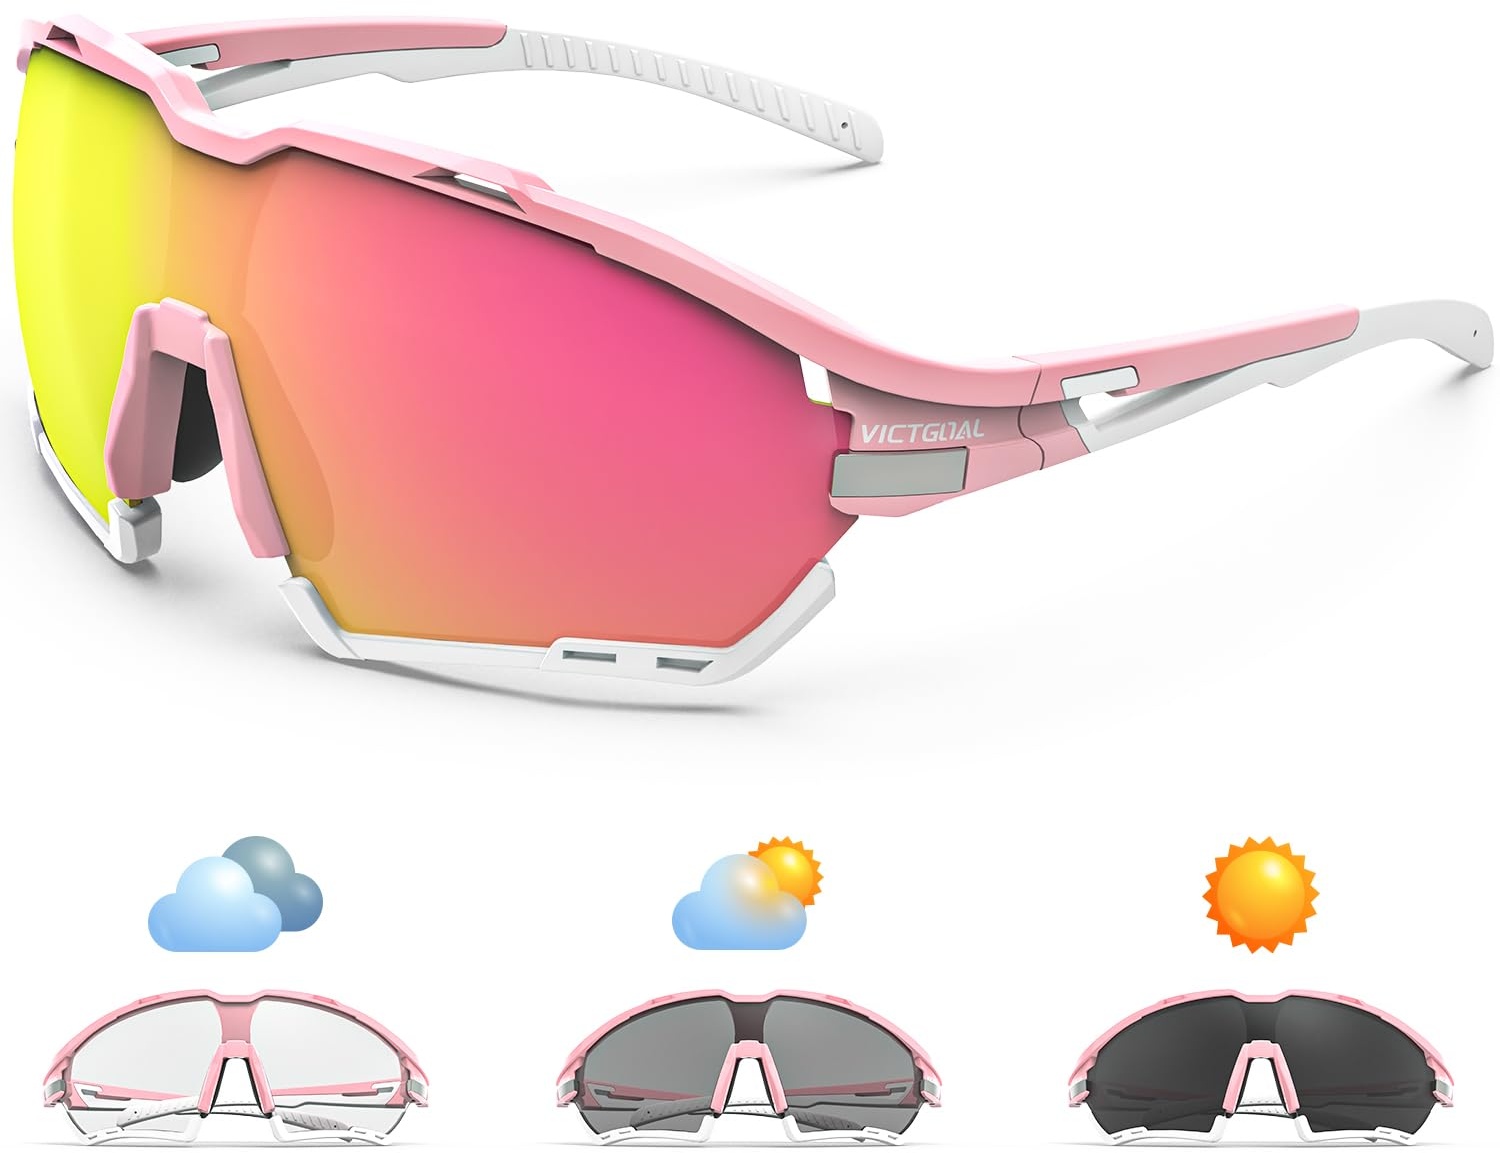 Victgoal Fahrradbrille Herren Damen UV400 Schutz Sonnenbrille, mit 2 Wechselgläser Polarisierte & Photochrome, Schutzbrille Sportbrille für Outdoorsports wie Radfahren Laufen Angeln (Rosa)